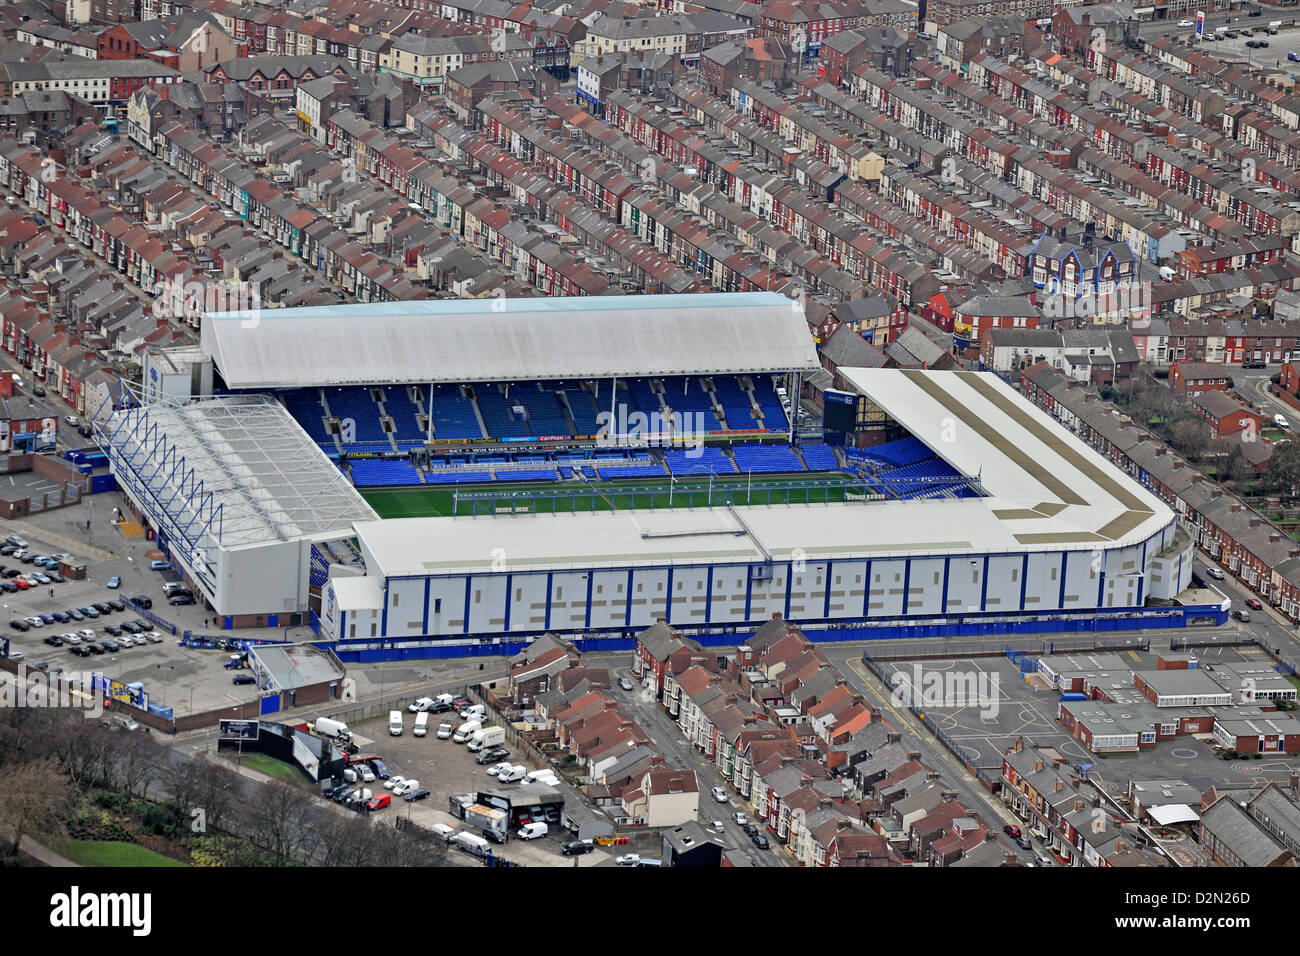 Fotografía aérea de Everton, terreno de fútbol Goodison Park Foto de stock